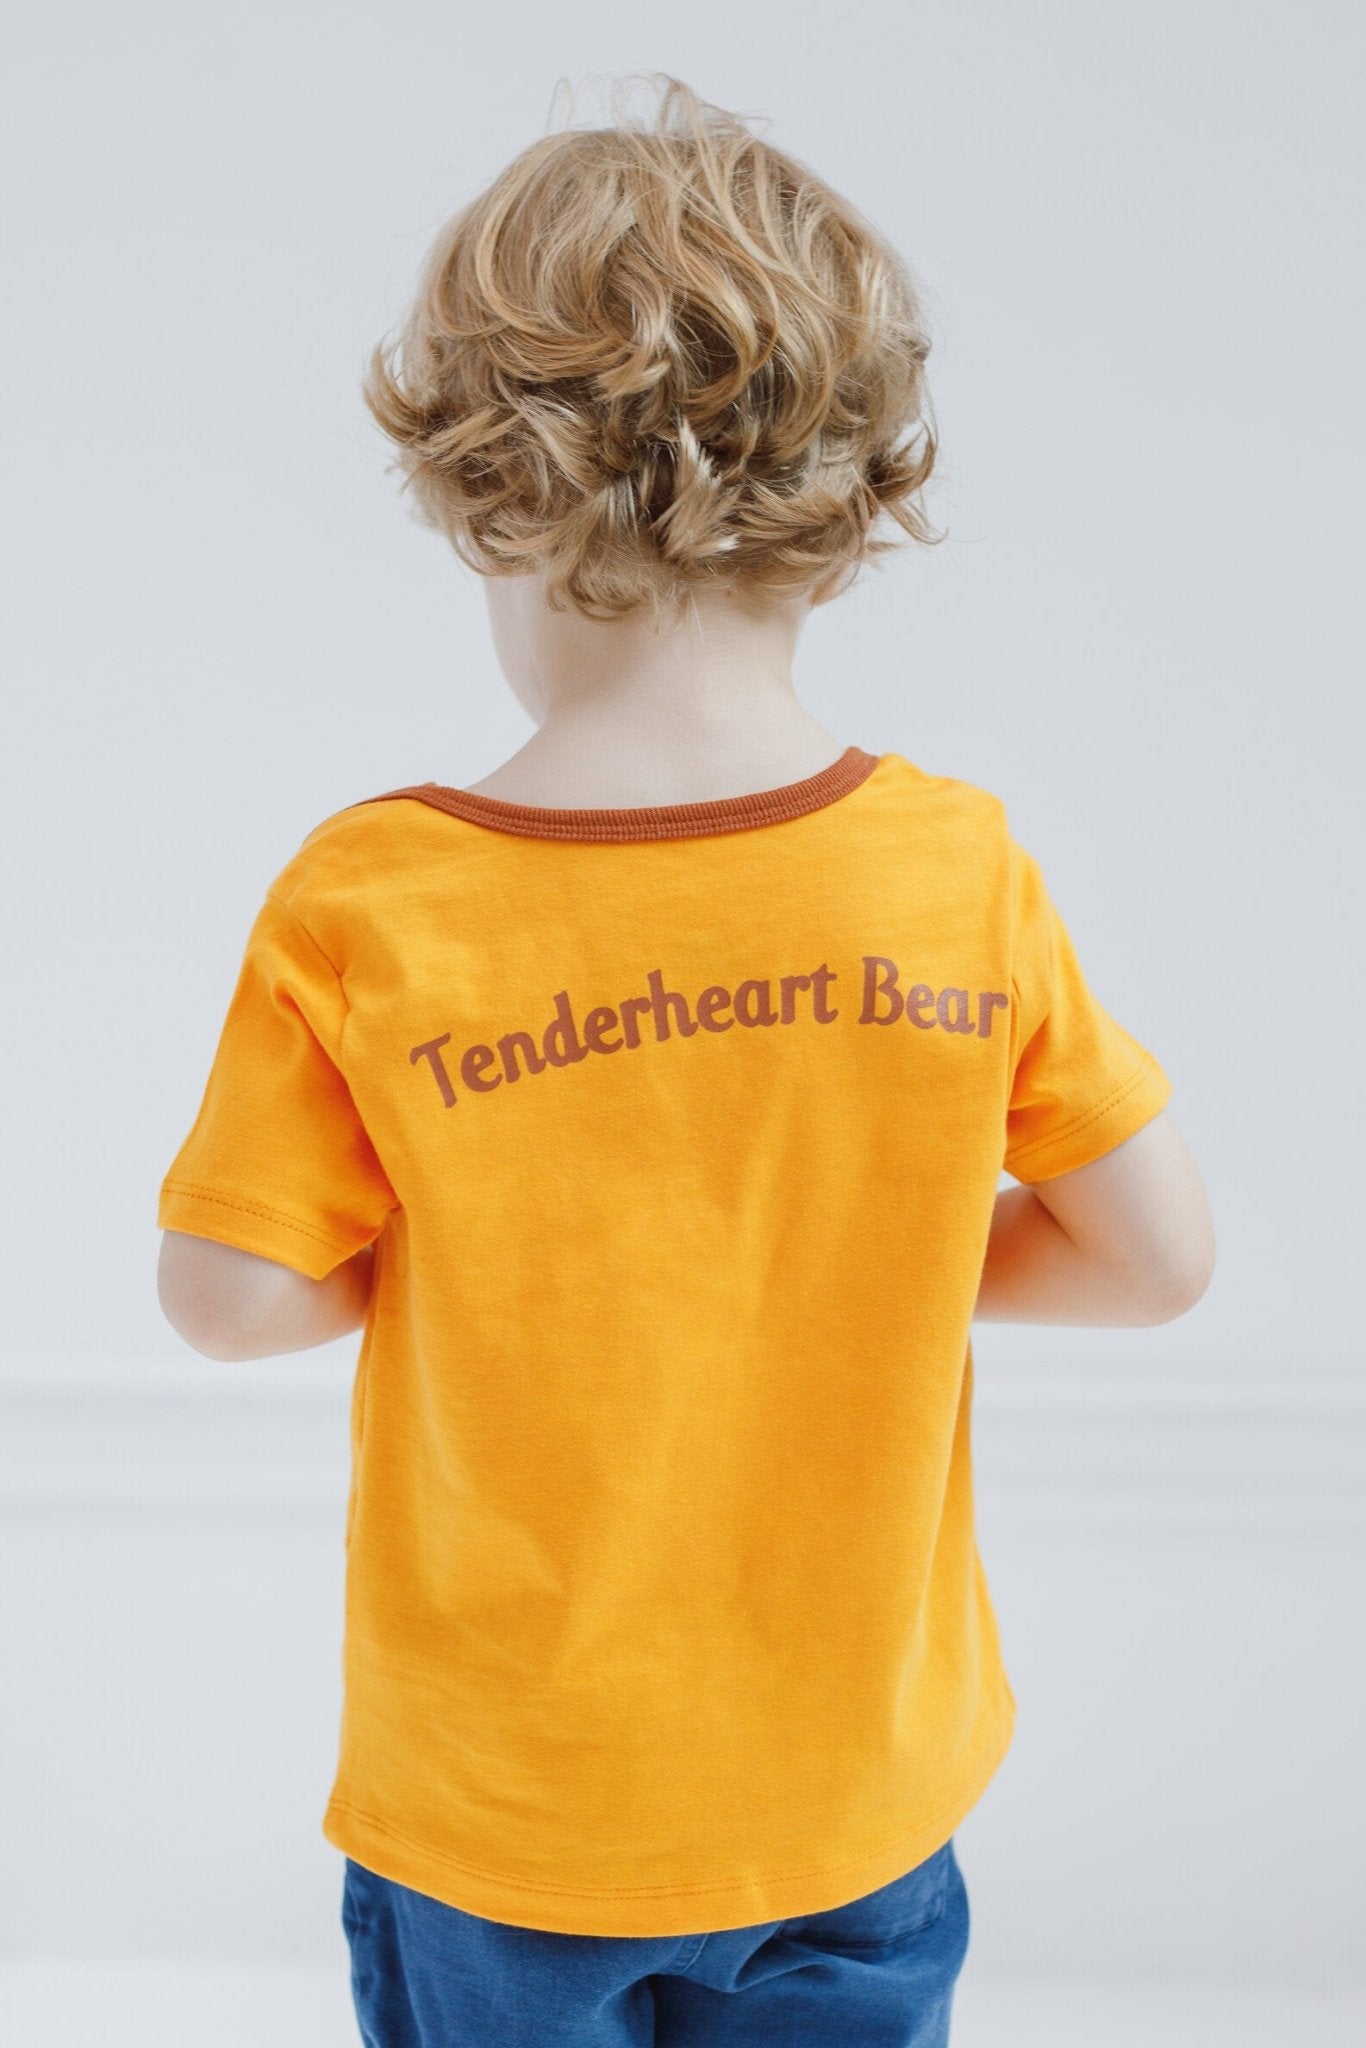 Care Bears Tender Heart Bear T-Shirt - imagikids